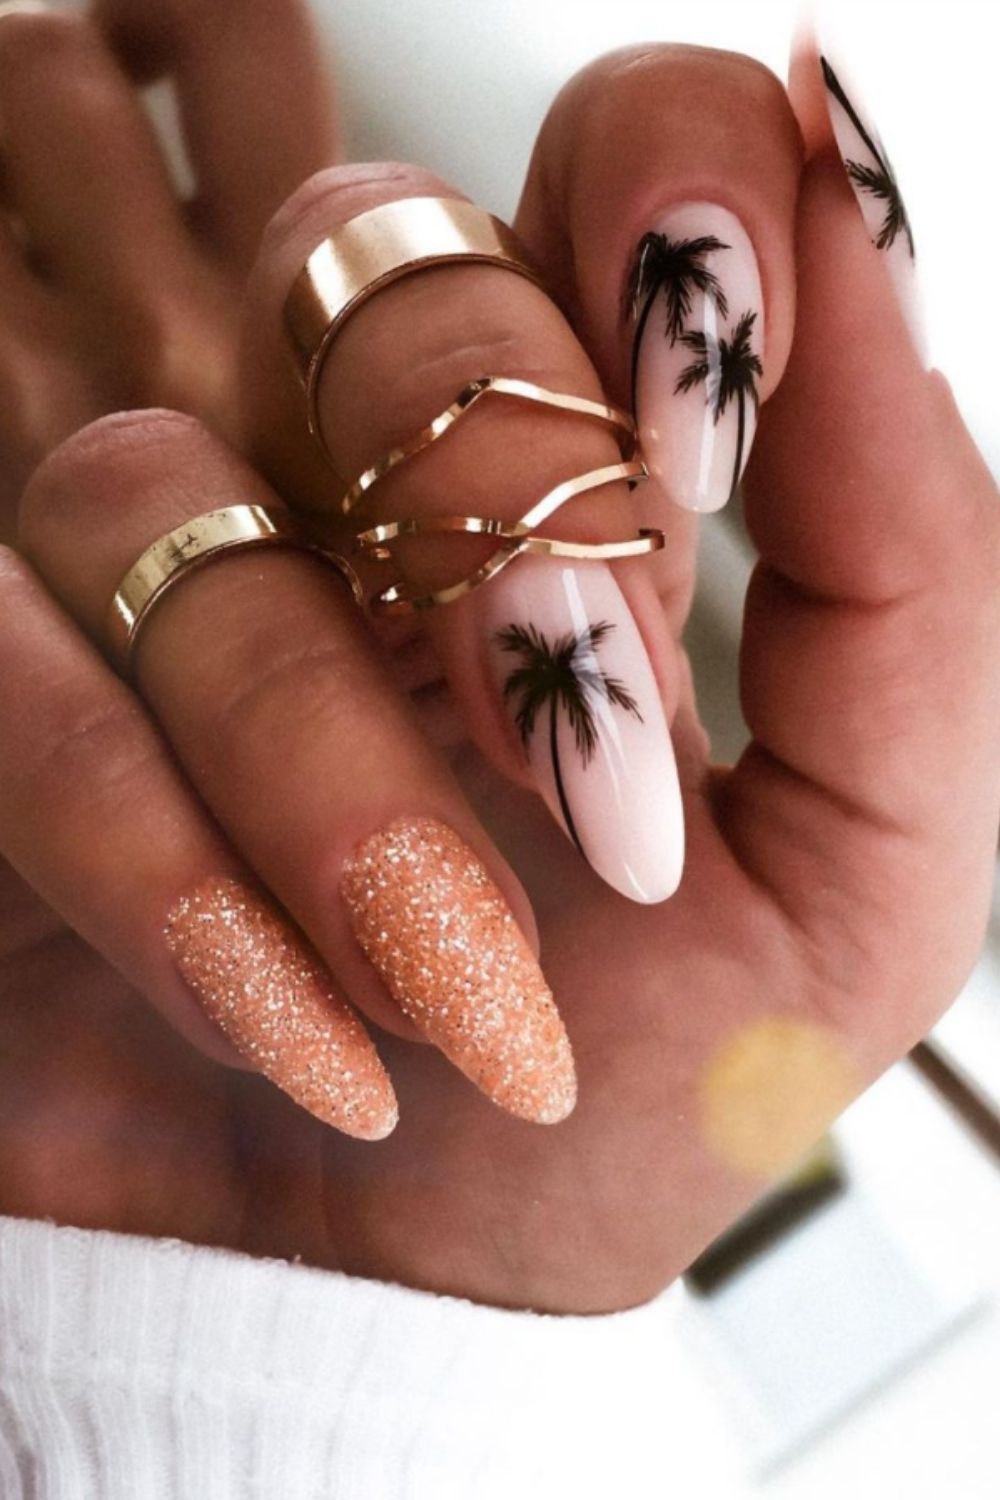 Beach nails